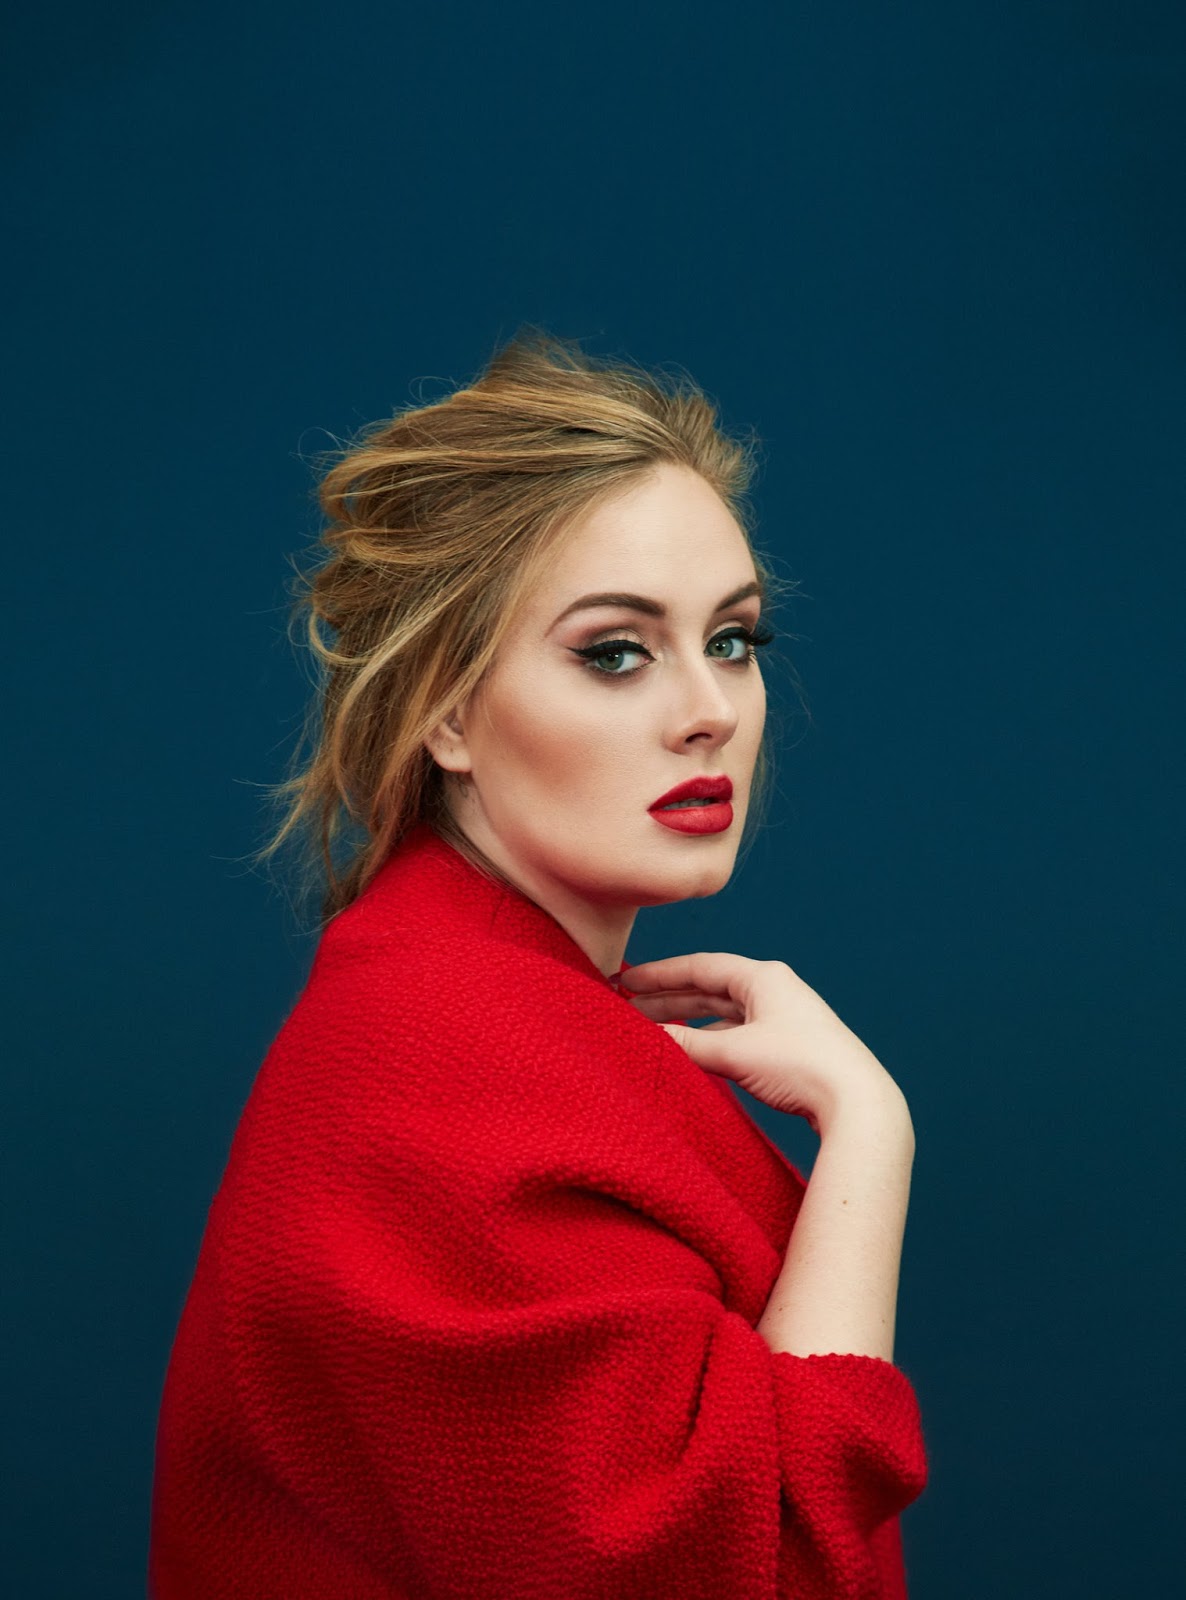 Smile: Adele in Time Magazine December 28th, 2015 by Erik Madigan Heck1186 x 1600